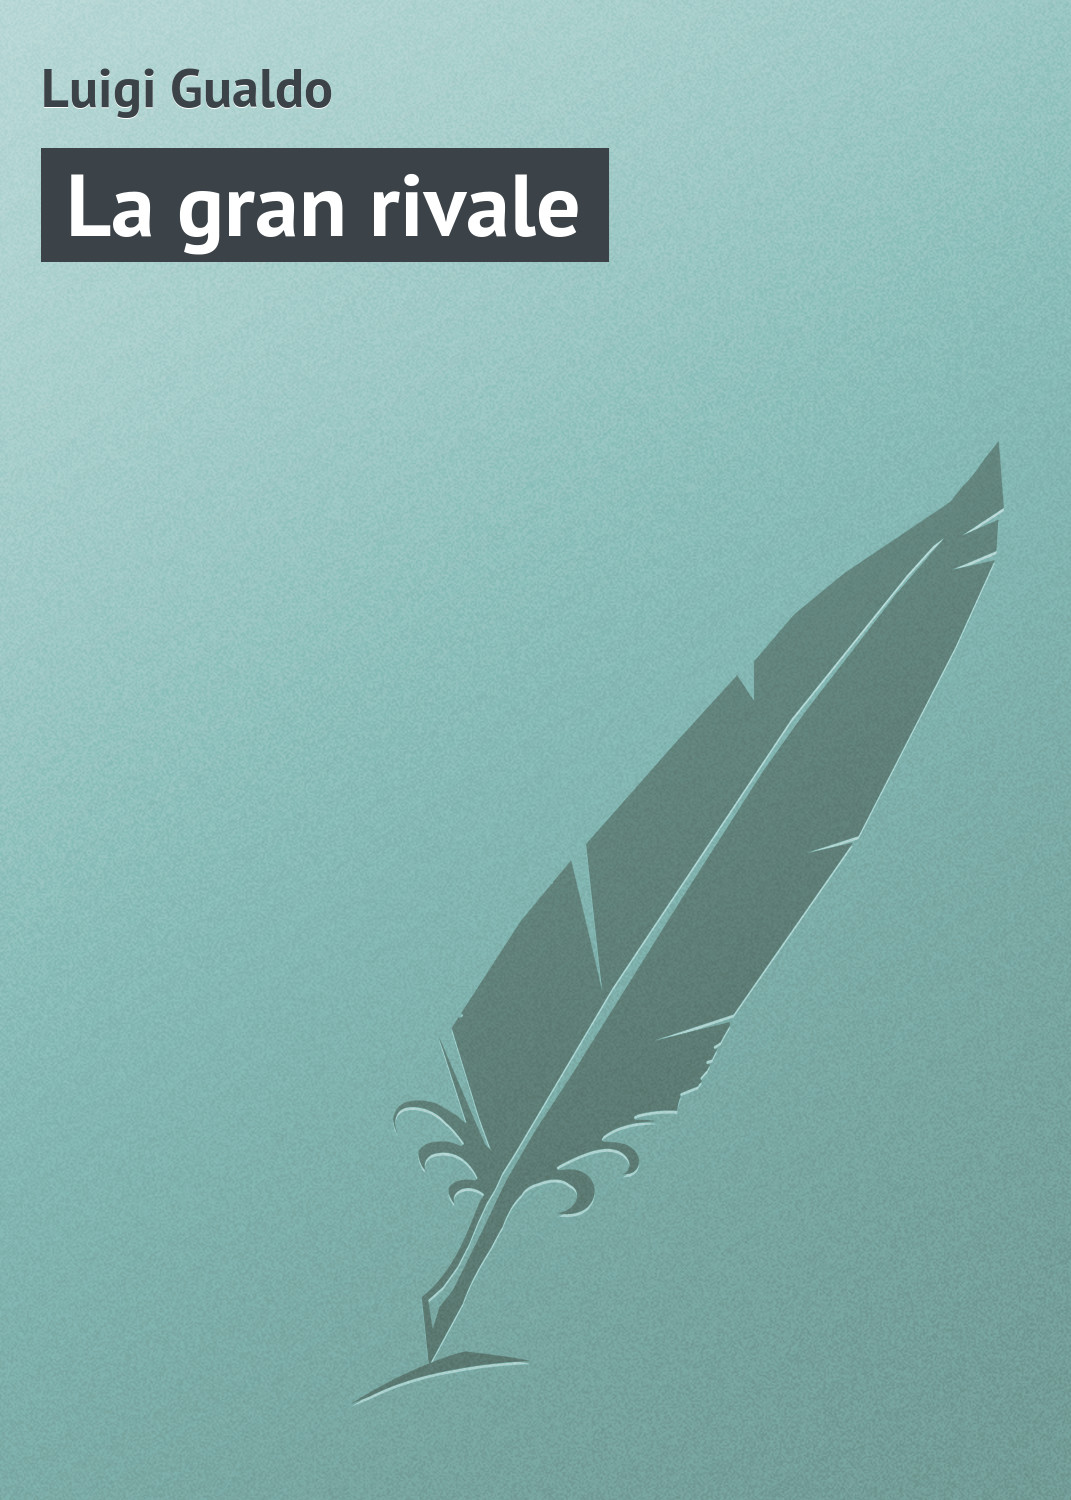 Книга La gran rivale из серии , созданная Luigi Gualdo, может относится к жанру Зарубежная старинная литература, Зарубежная классика. Стоимость электронной книги La gran rivale с идентификатором 21103822 составляет 5.99 руб.